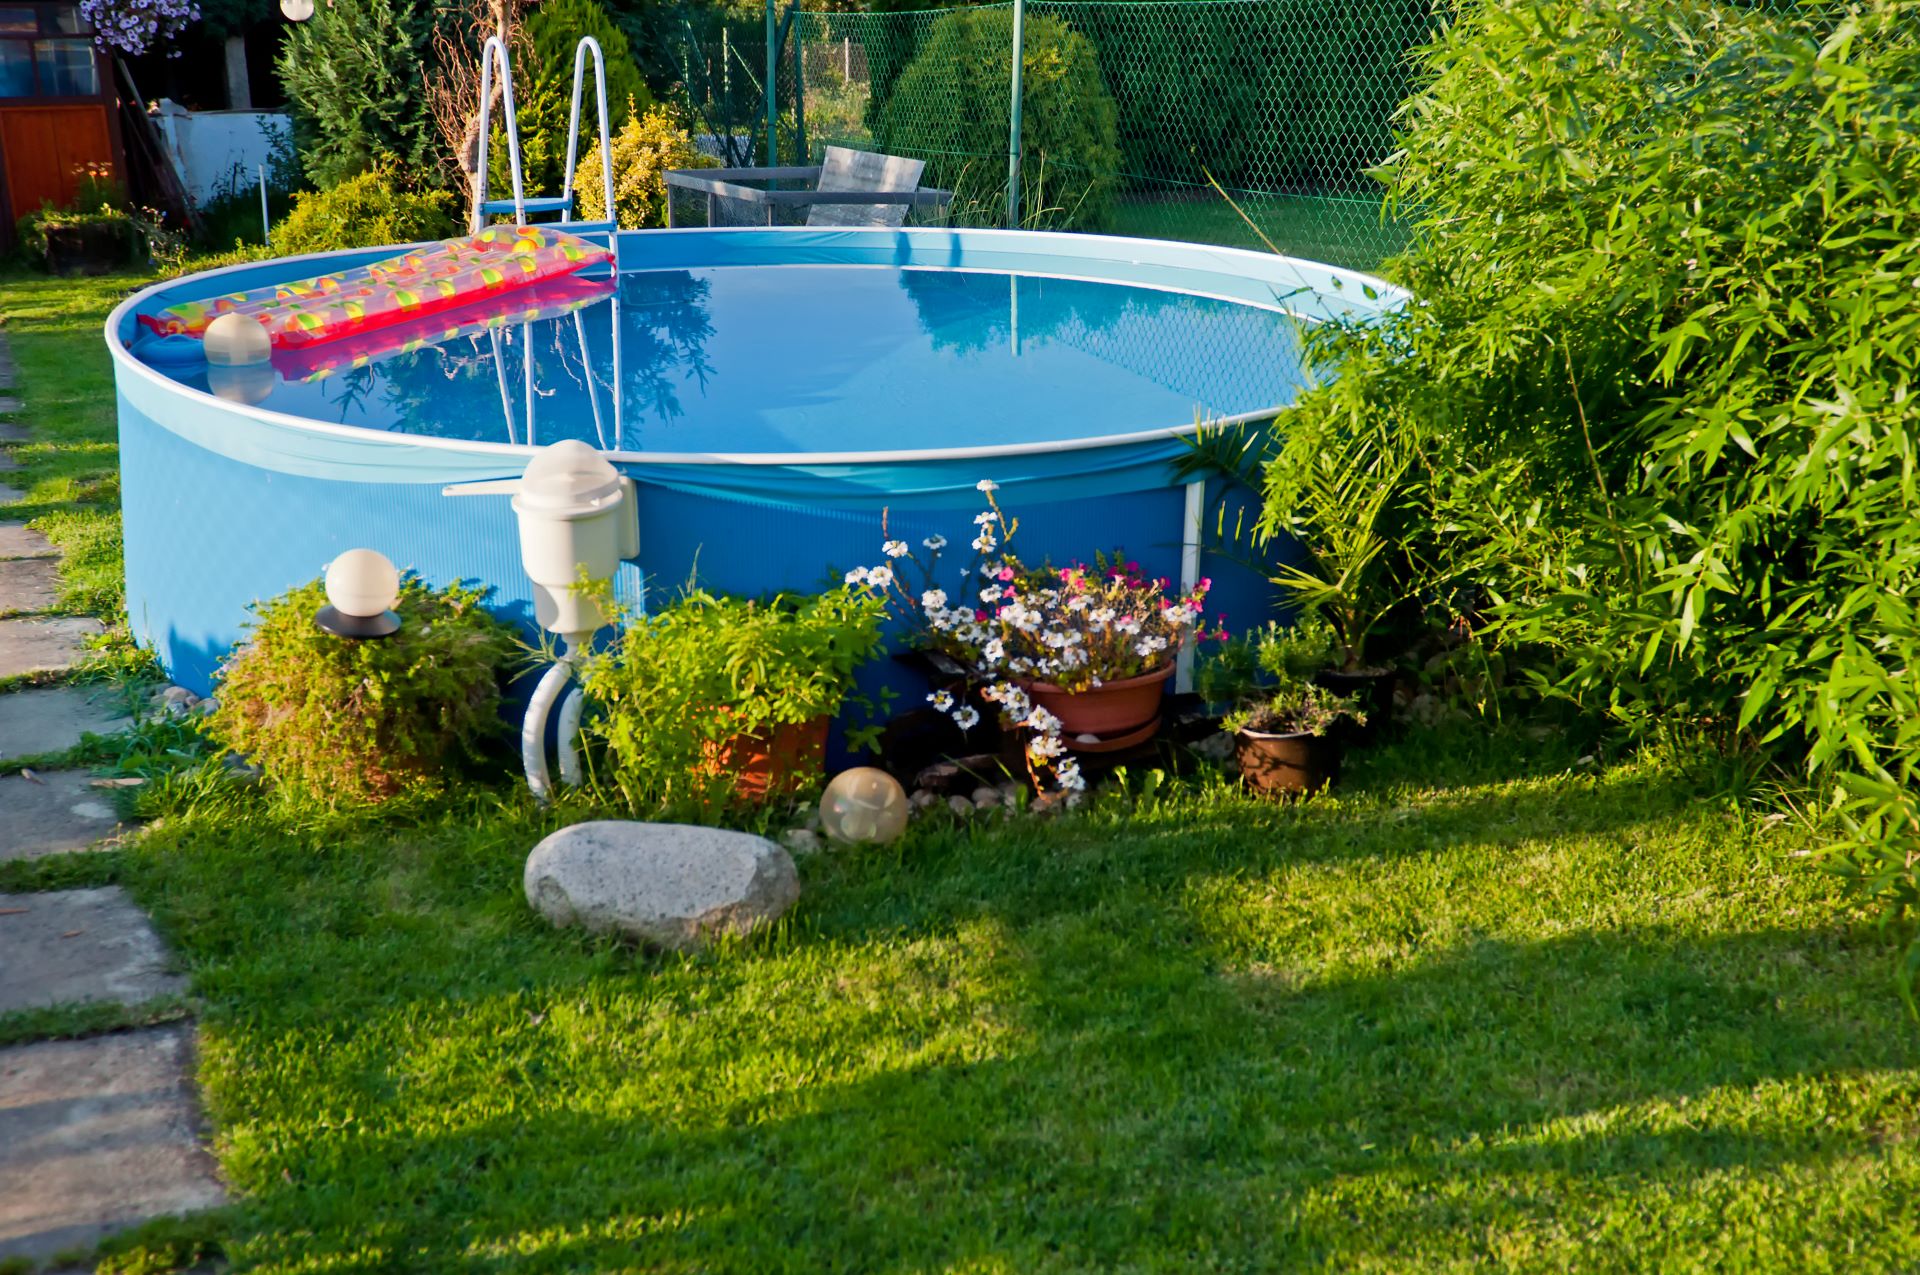 Mit Wasser gefüllter, runder Aufstellpool auf der Wiese eines Gartens. Pinkfarbene Luftmatratze schwimmt auf dem Wasser. Blumenkübel dekorieren den Poolbereich. 